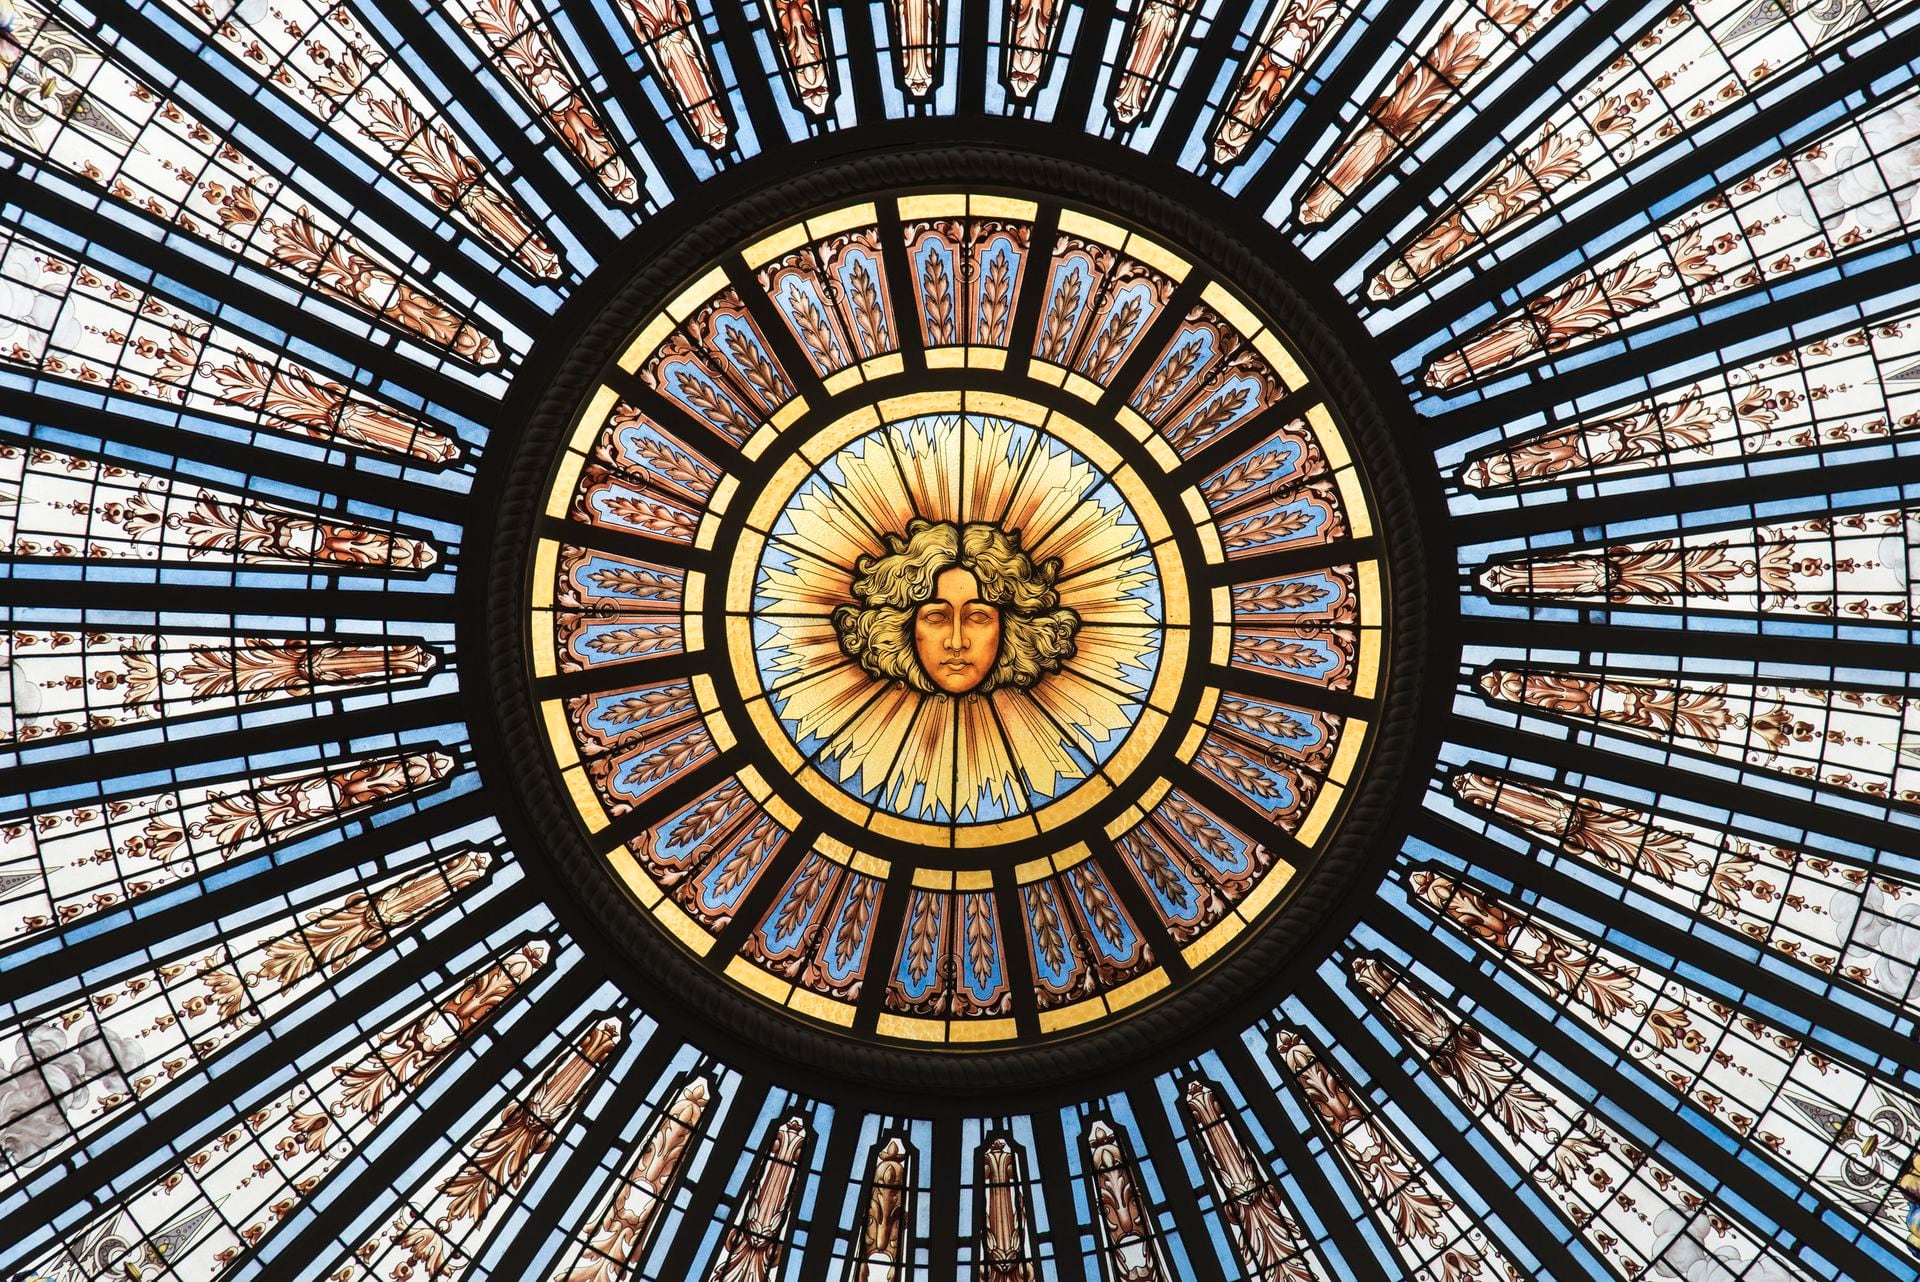 Los vitrales dominan la escena en varios de los ambientes del Palacio Paz. La cúpula principal no puede ser observada desde la calle